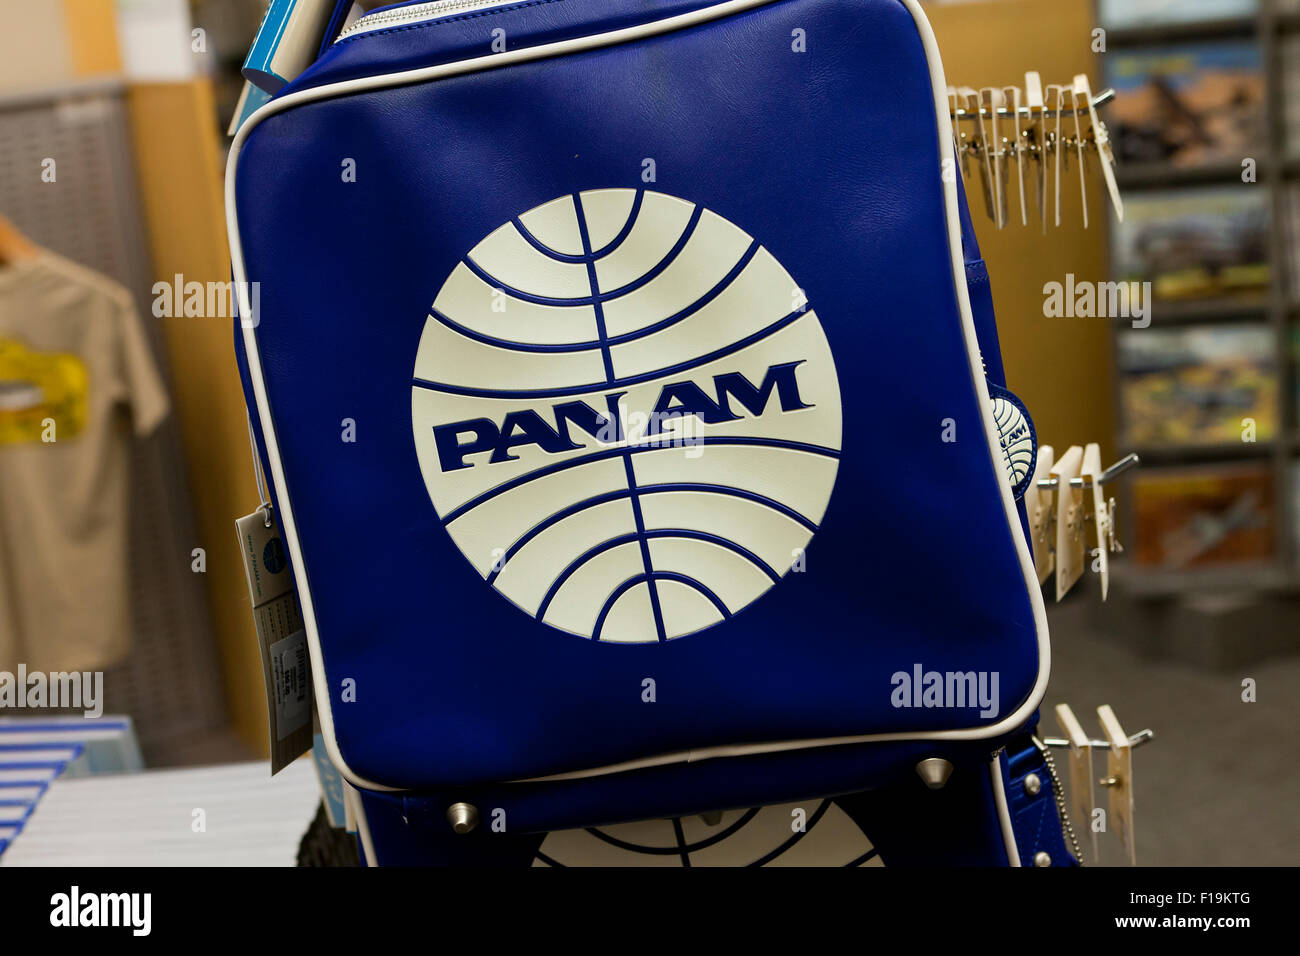 Pan Am Vintage sac cabine - USA Banque D'Images